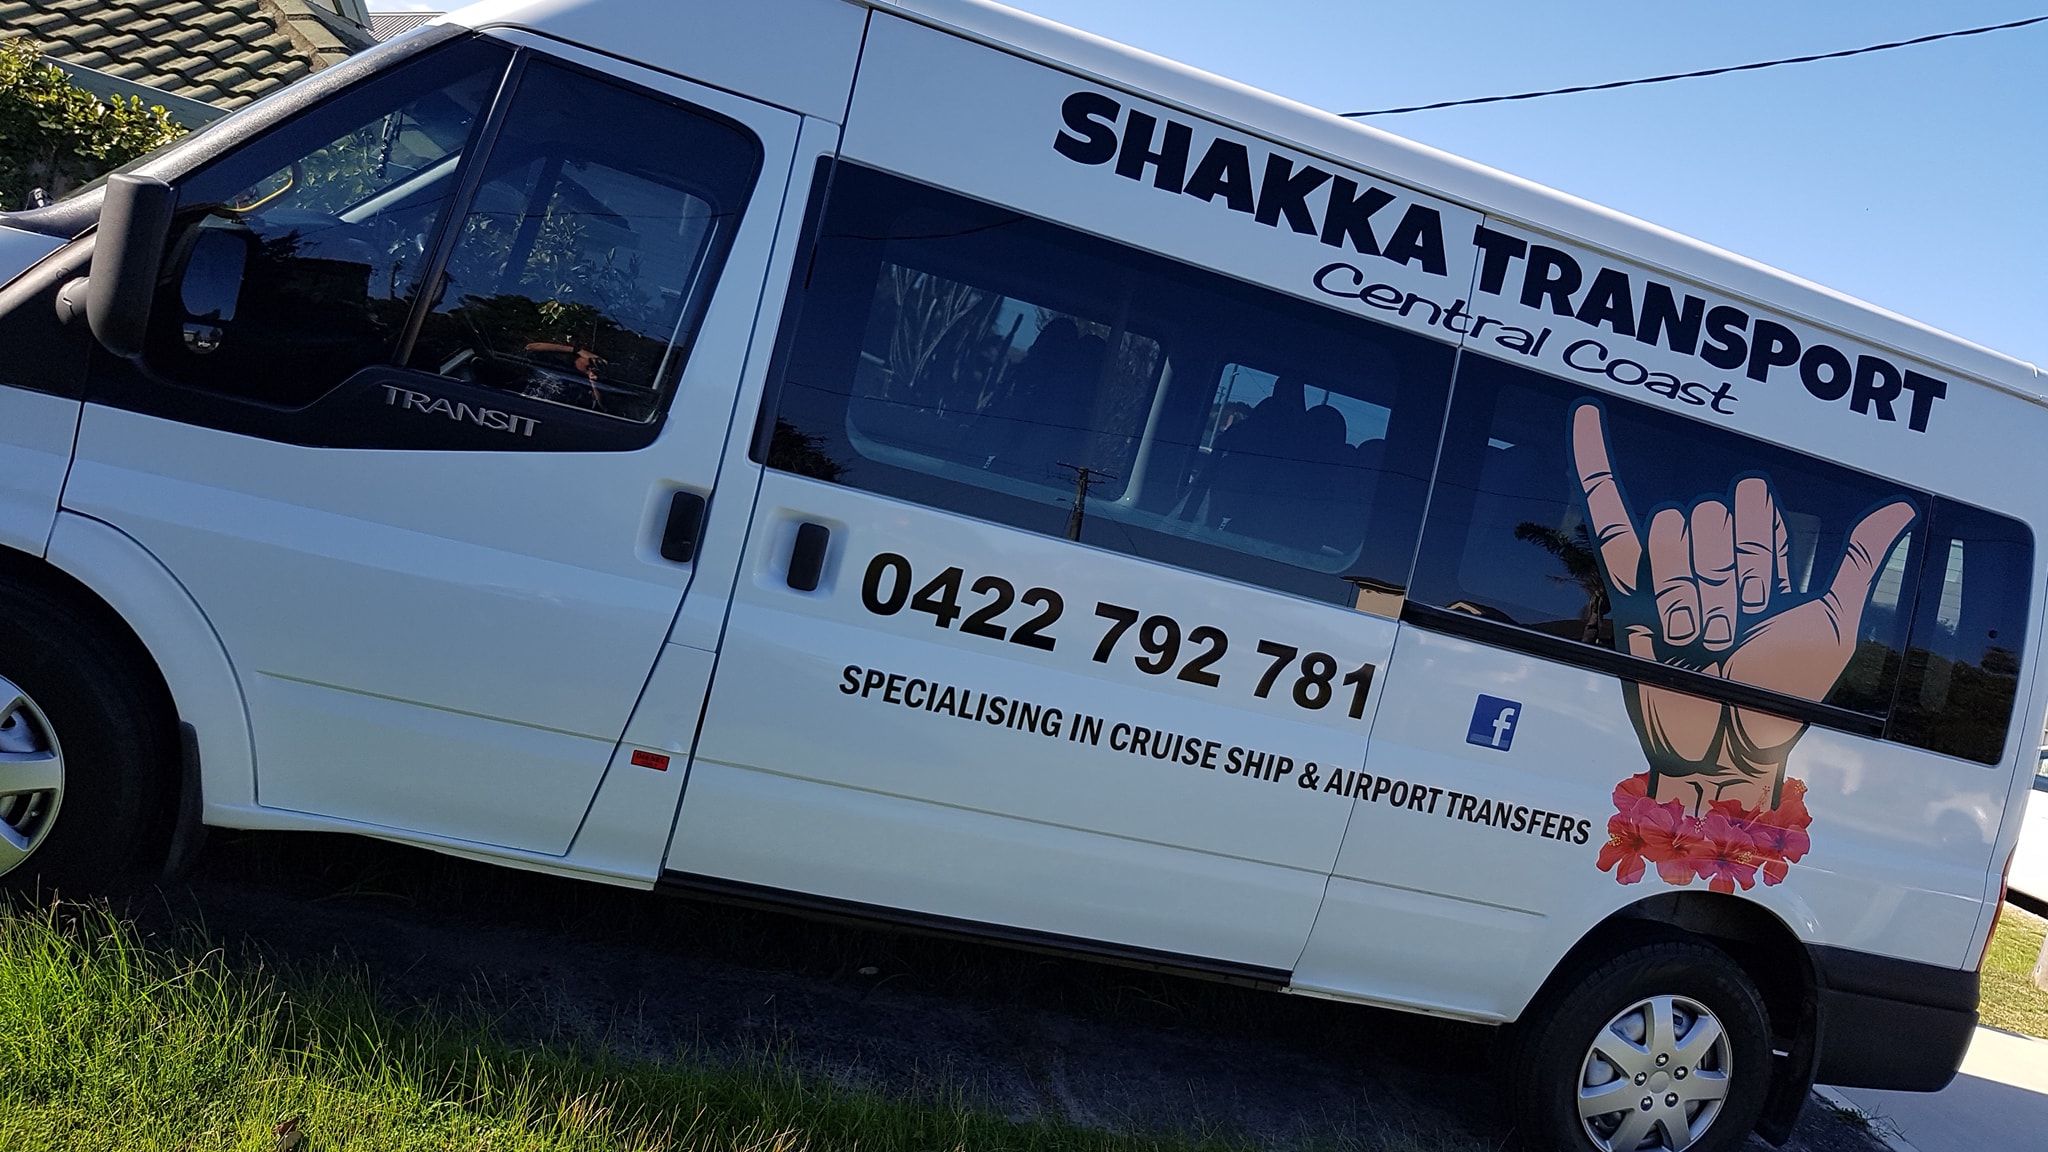 Shakka Transport Gosford Central Coast - NSW | OBZ Online Business Zone